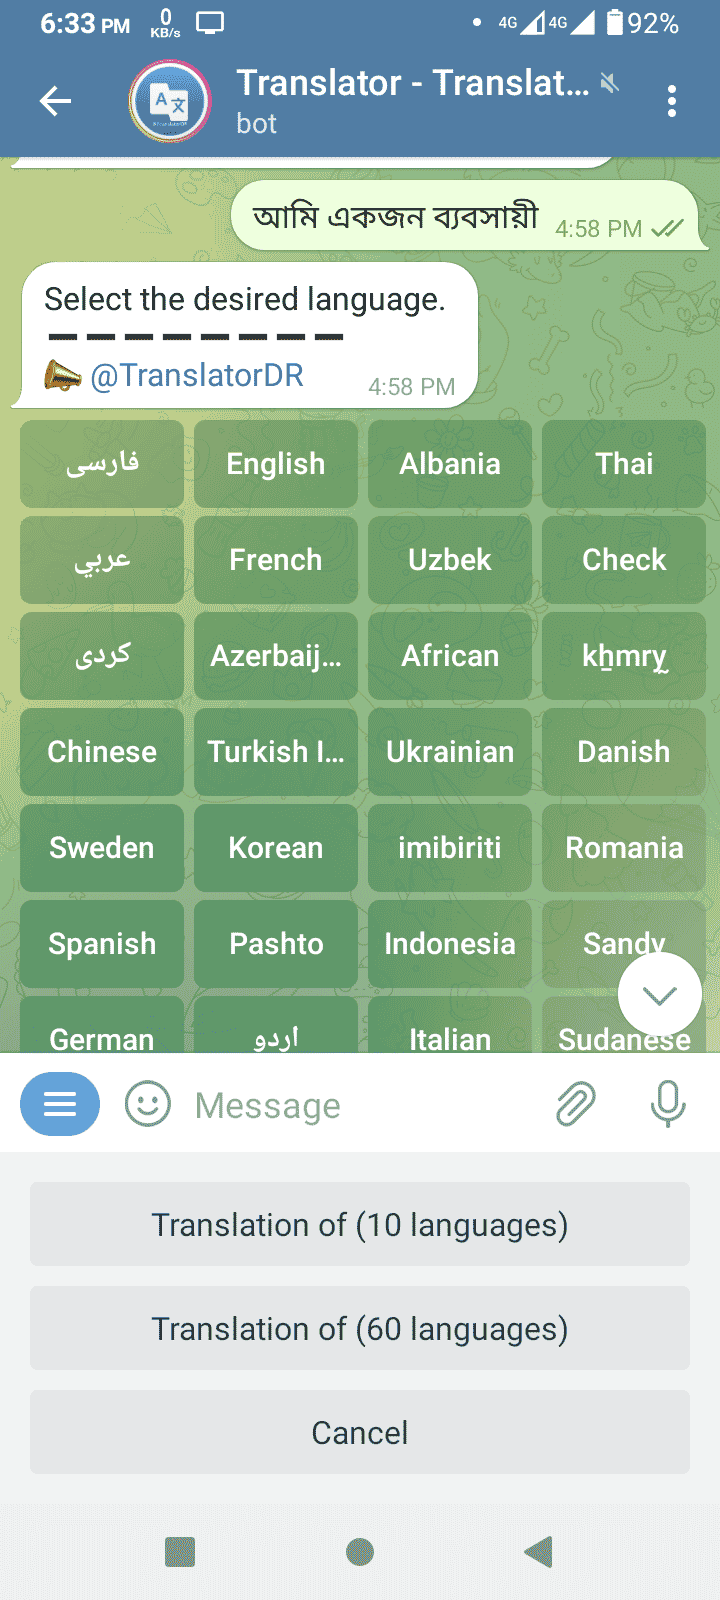 translate telegram bot for student